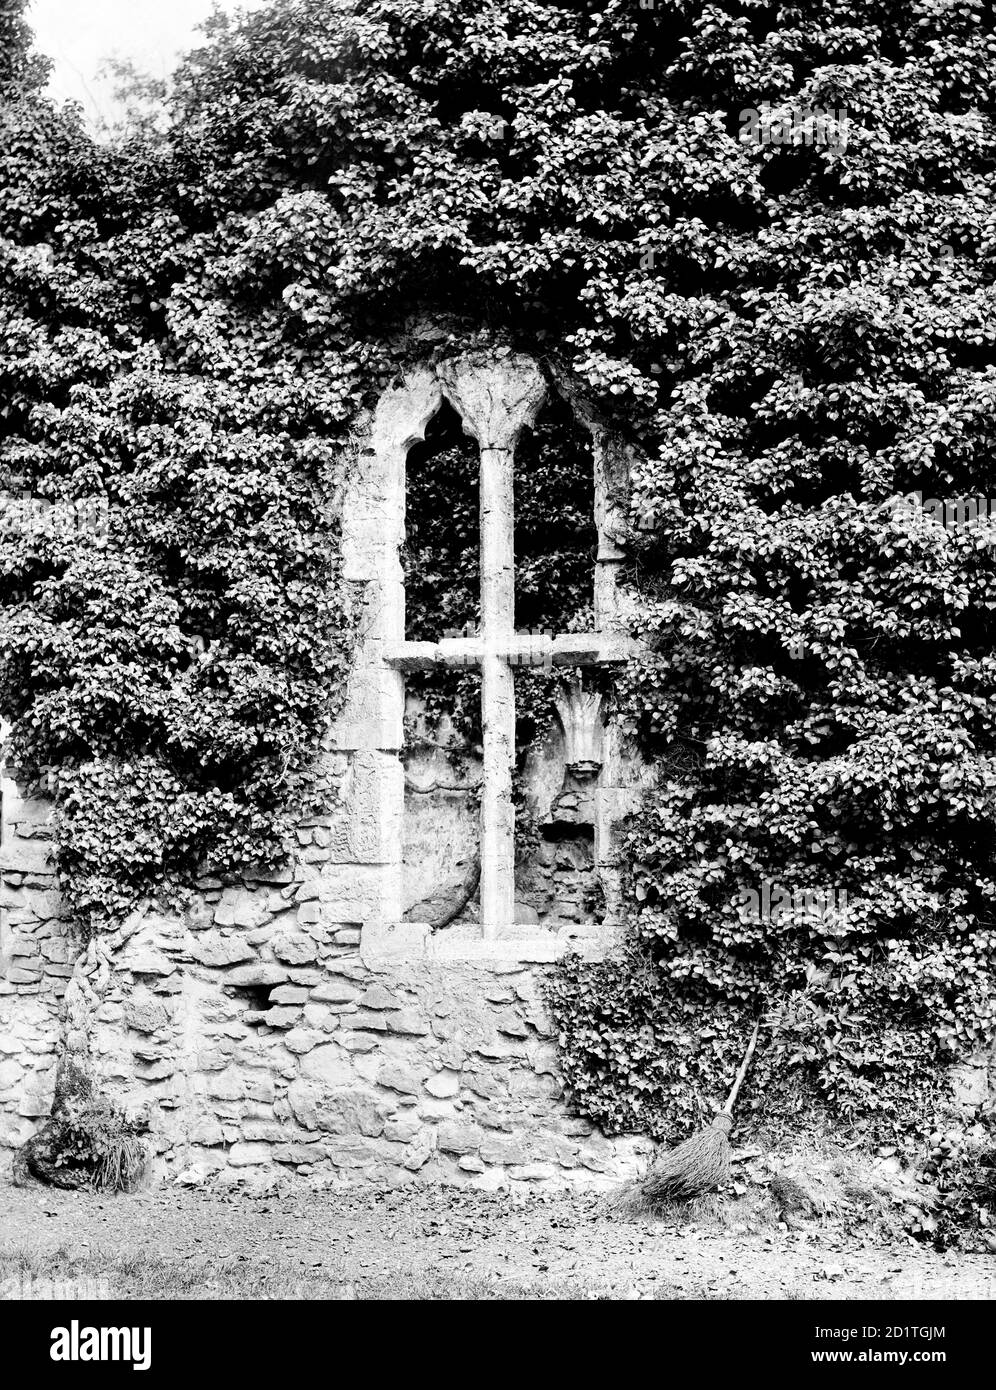 NETLEY ABBEY, Netley, Hampshire. Efeu, der die Abtei bedeckt, umrahmt ein Fenster im Tageszimmer. Gegründet im 13. Jahrhundert, ist Netley das vollständigste erhaltene Zisterzienserkloster in Südengland. Auch in Ruinen blieb die Abtei einflussreich und inspirierte romantische Schriftsteller und Dichter. Es ist jetzt in der Pflege des englischen Erbes. Fotografiert 1890 von Henry Taunt. Stockfoto